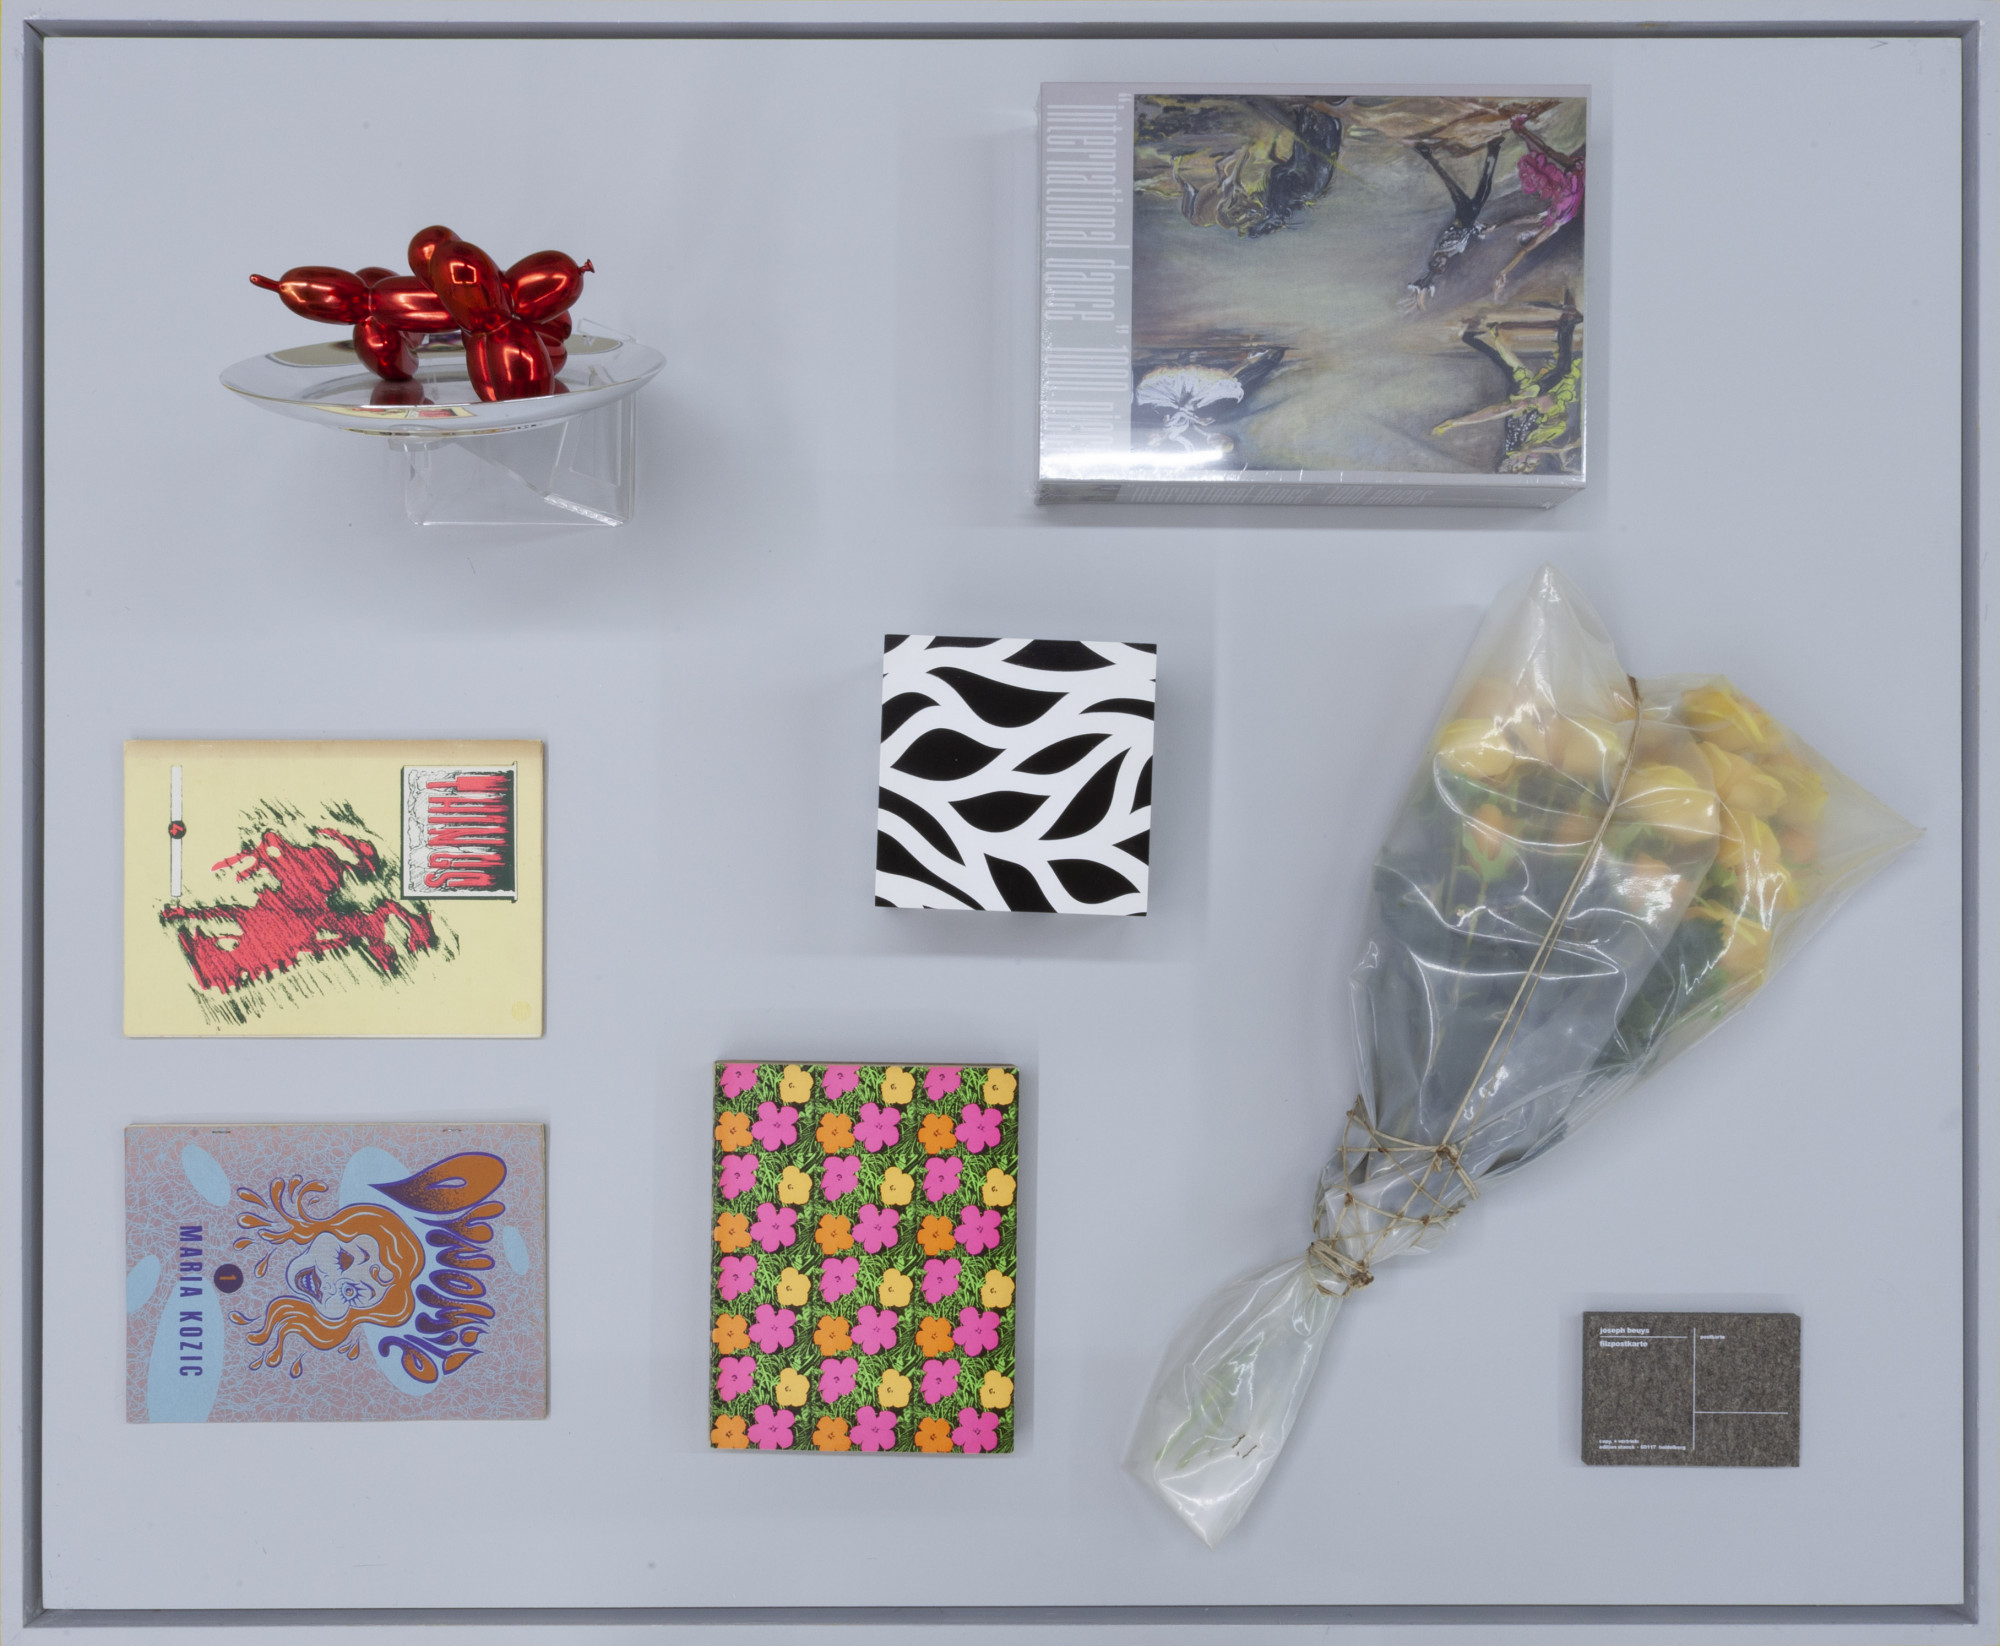 Cabinet view, <em>Collectables</em>, Centre D’editions, Gertrude St. From top left, counter-clockwise: Jeff Koons, <em>Ballon Dog Plate (Red)</em>, 1995; Maria Kozic, <em>Things</em> (Issue 4), 1989; Maria Kozic, <em>Dynamite I</em>, 1991; Andy Warhol, <em>Andy Warhol</em>, Moderna Museum, 1969; Sol LeWitt, <em>Loopy Doopy Box</em>, 1999; Jana Euler, <em>international dance 1000 pieces</em>, 2021; Christo and Jeanne-Claude, <em>Wrapped Roses</em>, 1968; Joseph Beuys, <em>Filzpostkarte</em>, 1985. Photo courtesy of Centre D’editions.